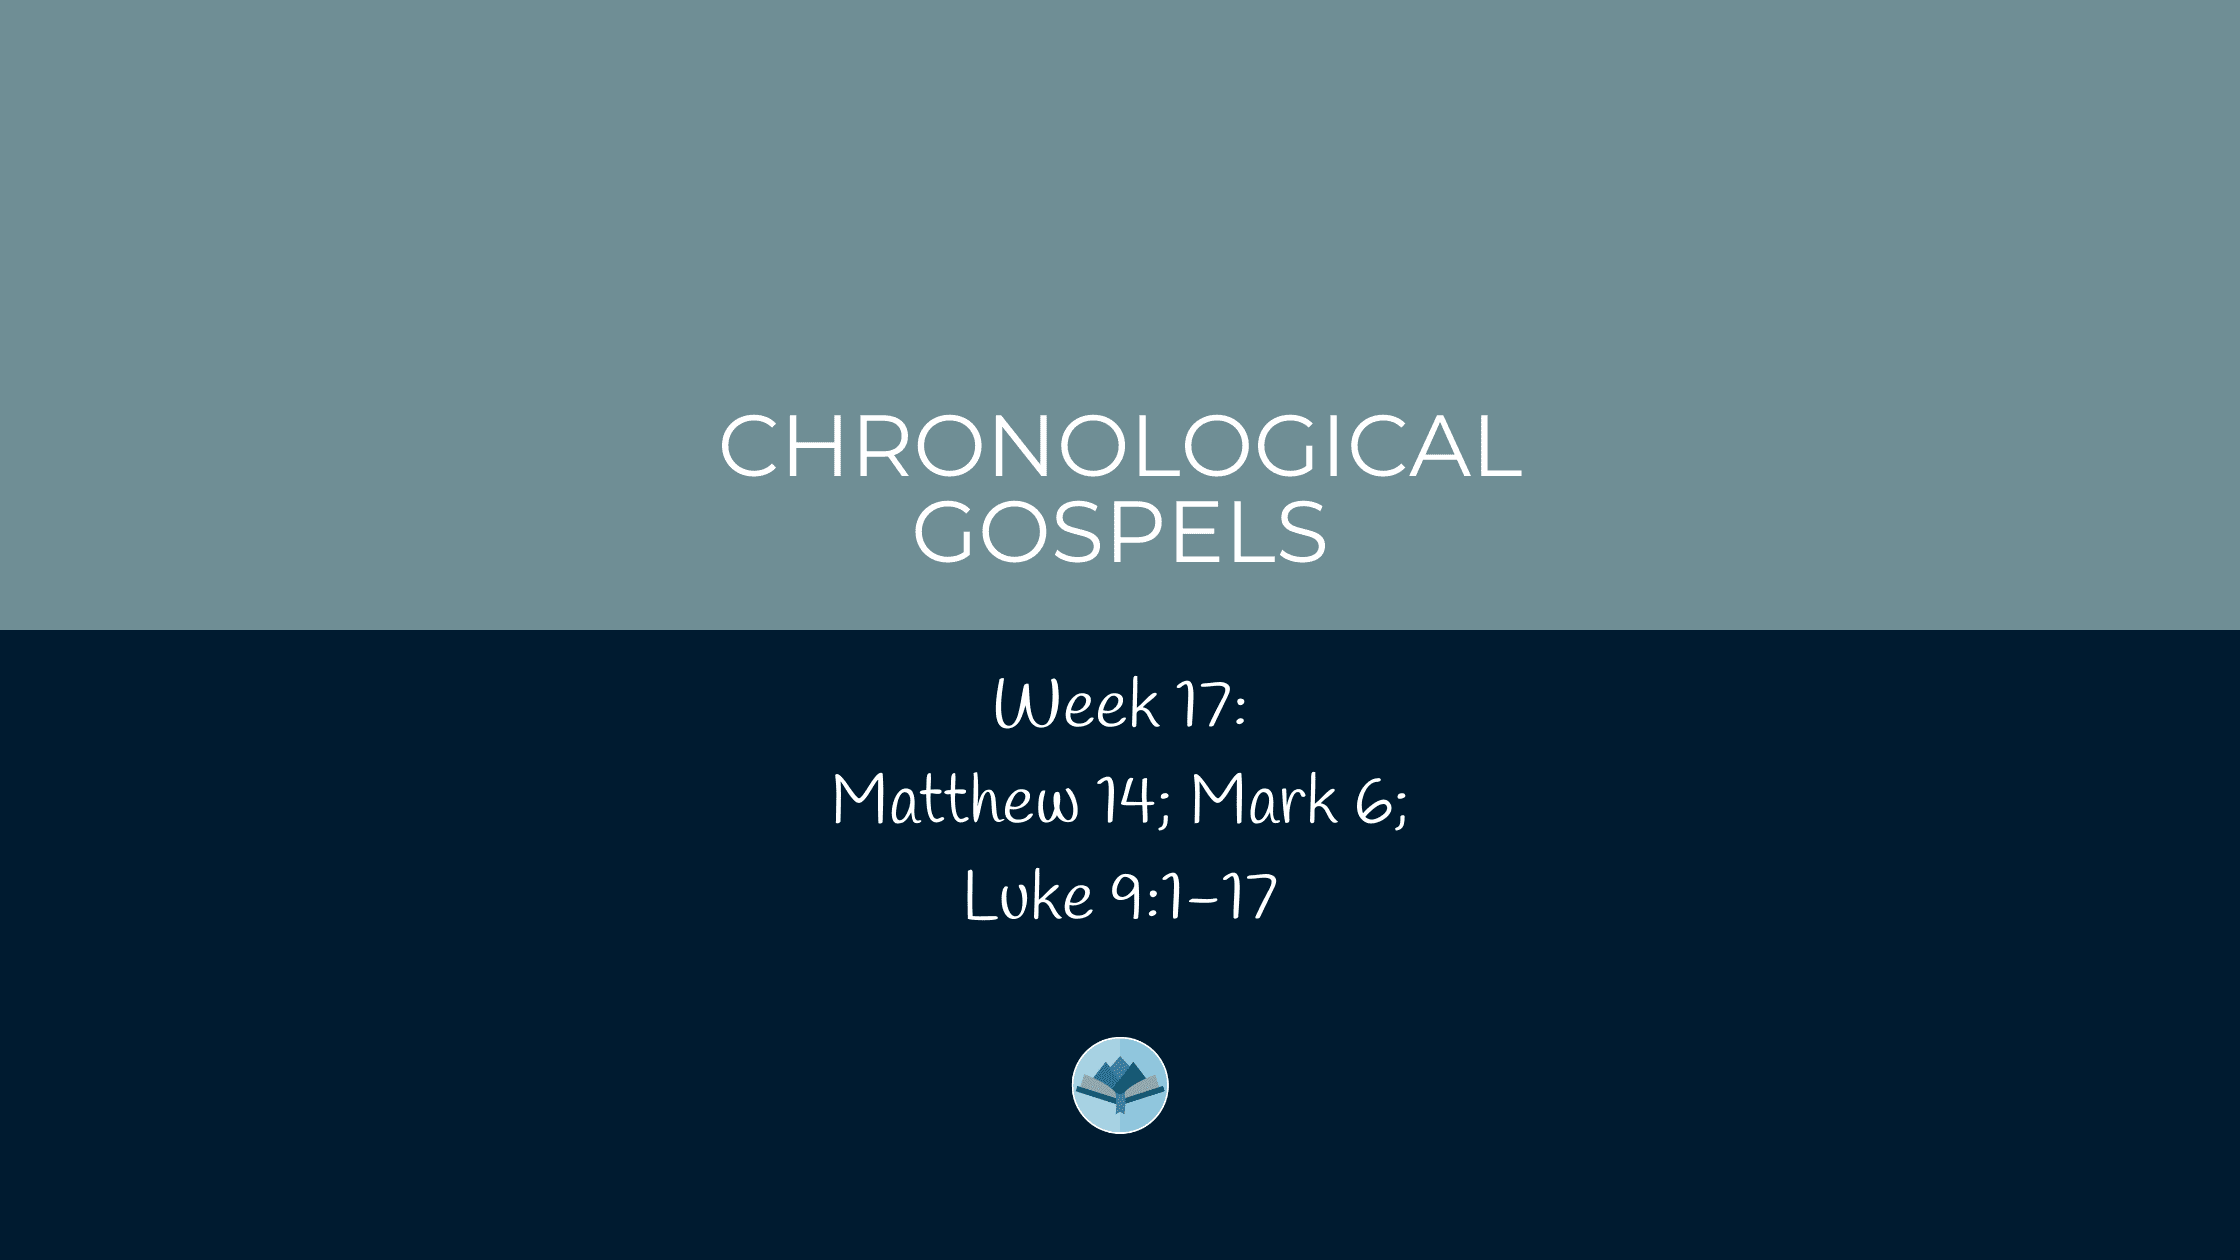 Chronological Gospels: Matthew 14; Mark 6; Luke 9:1-17